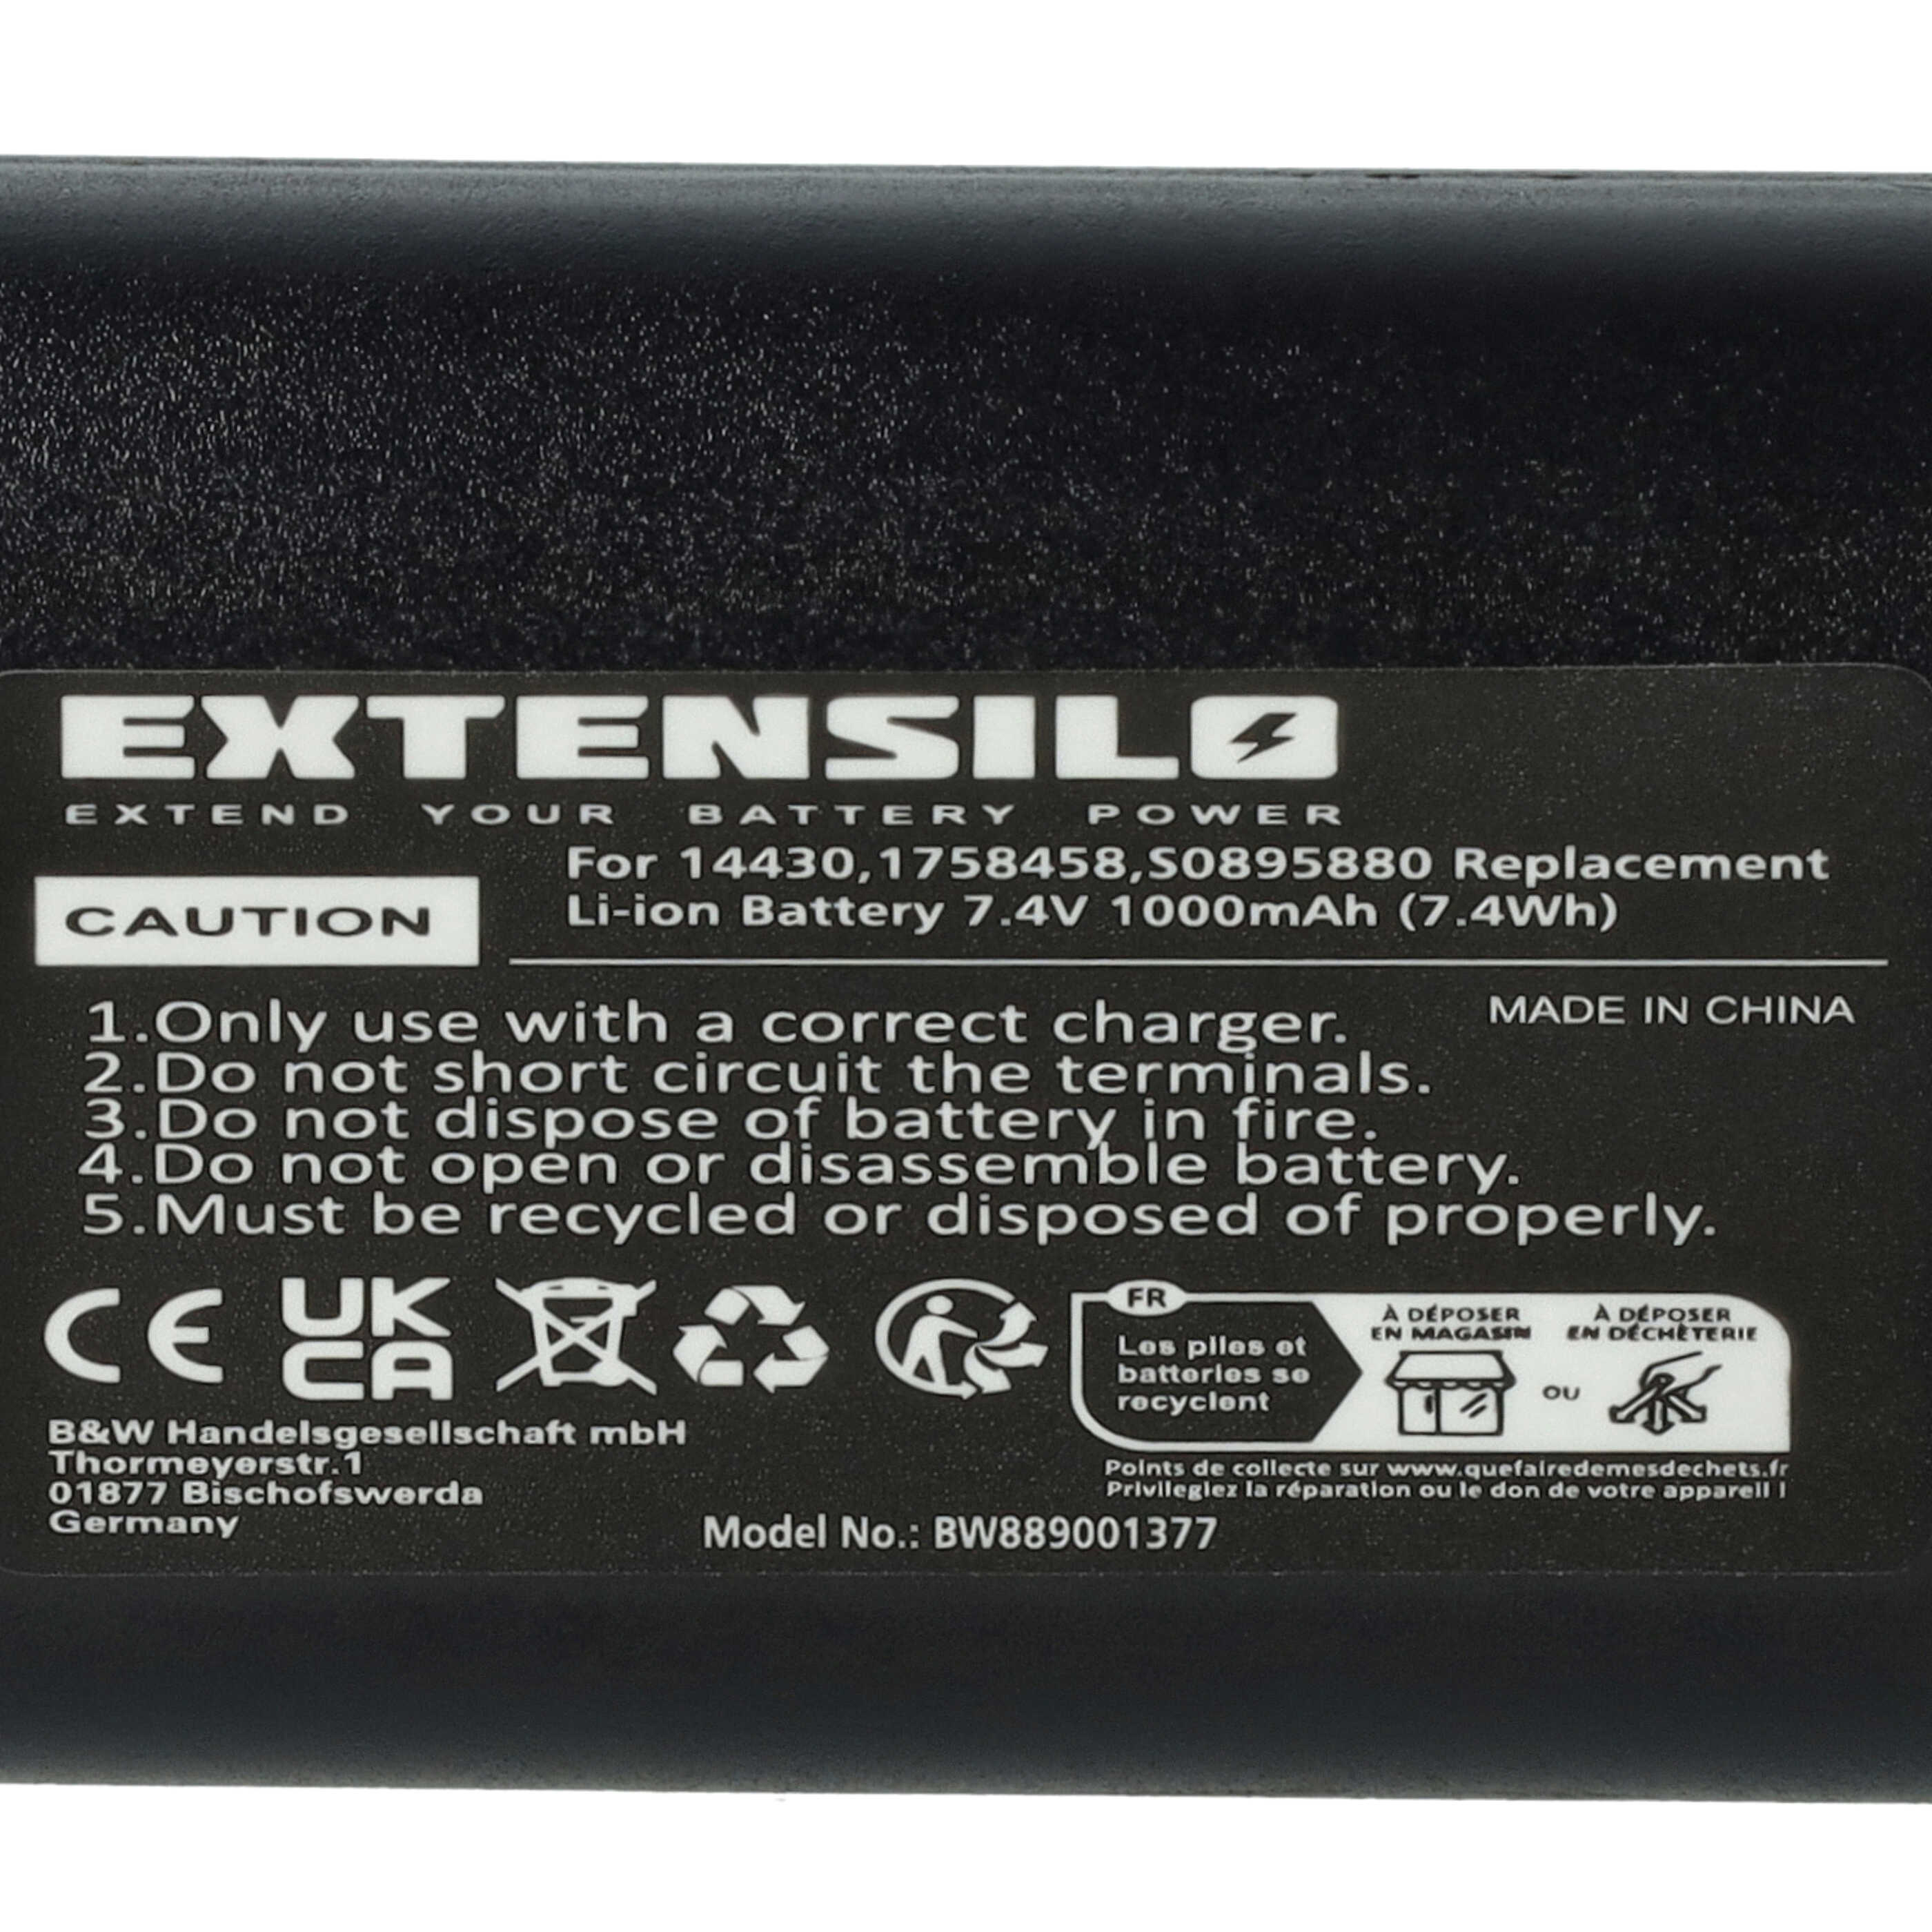 Batterie remplace 3M W003688, S0895880 pour imprimante - 1000mAh 7,4V Li-ion